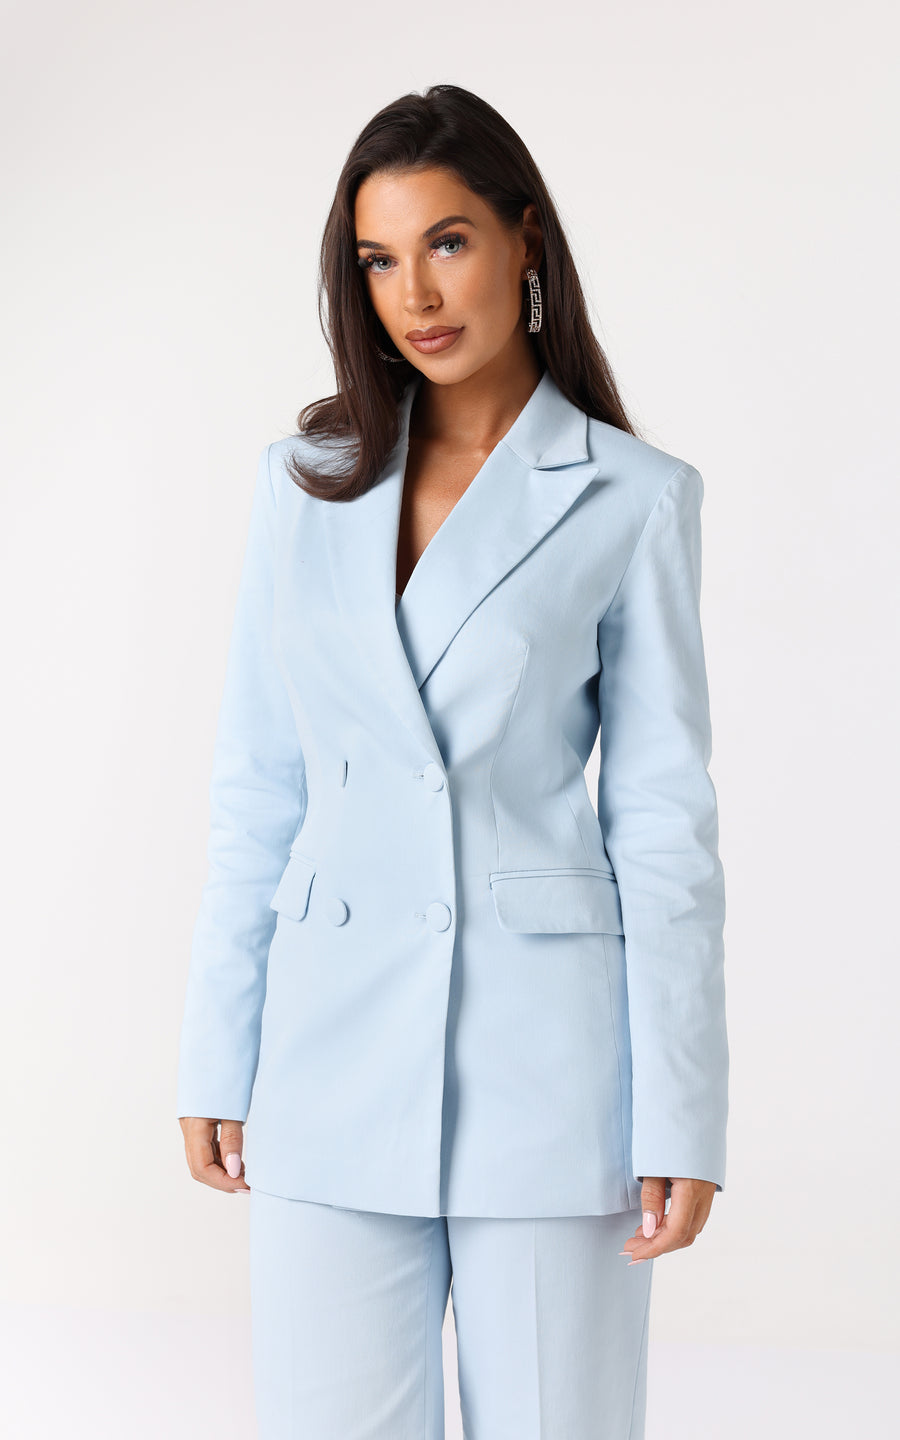 TERLEYA Suit – Tatiana Tretyak Brand